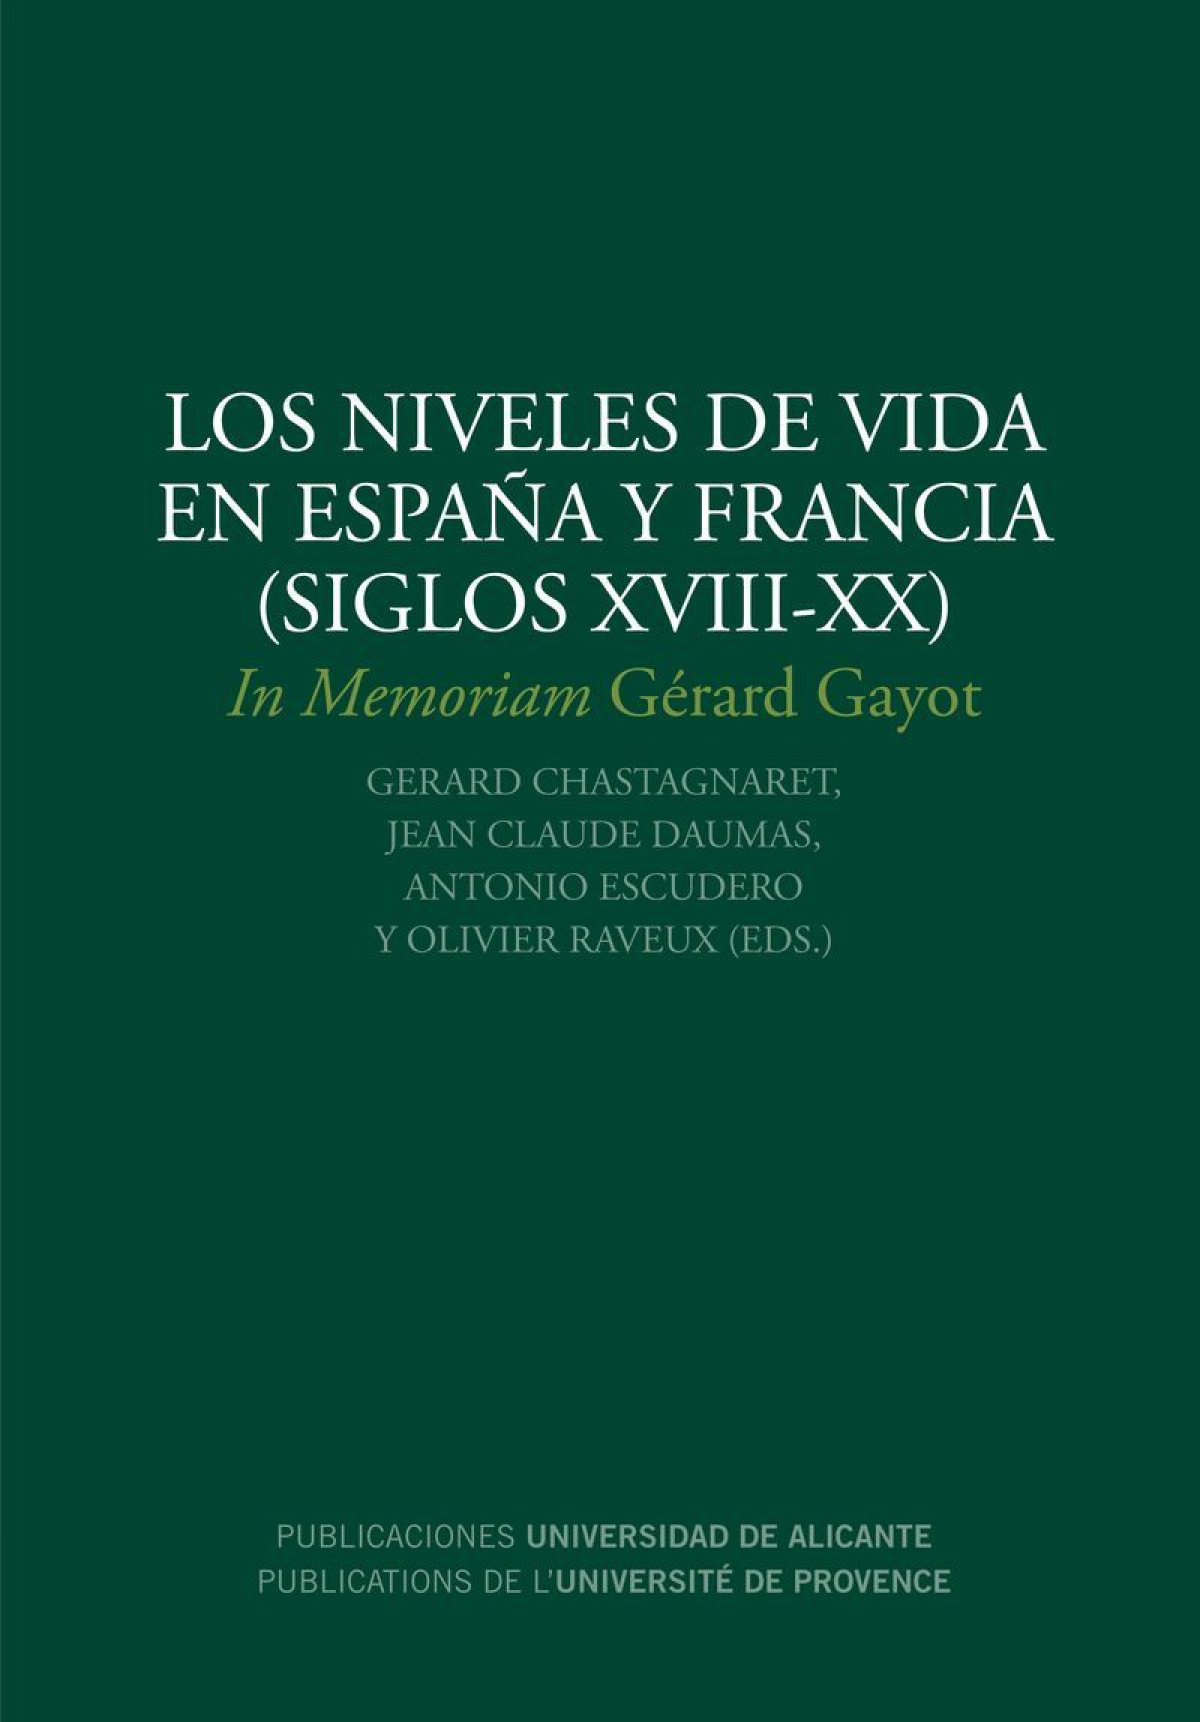 Los niveles de vida en España y Francia (siglos XVIII-XX) - Escudero Gutiérrez, Antonio/y otros